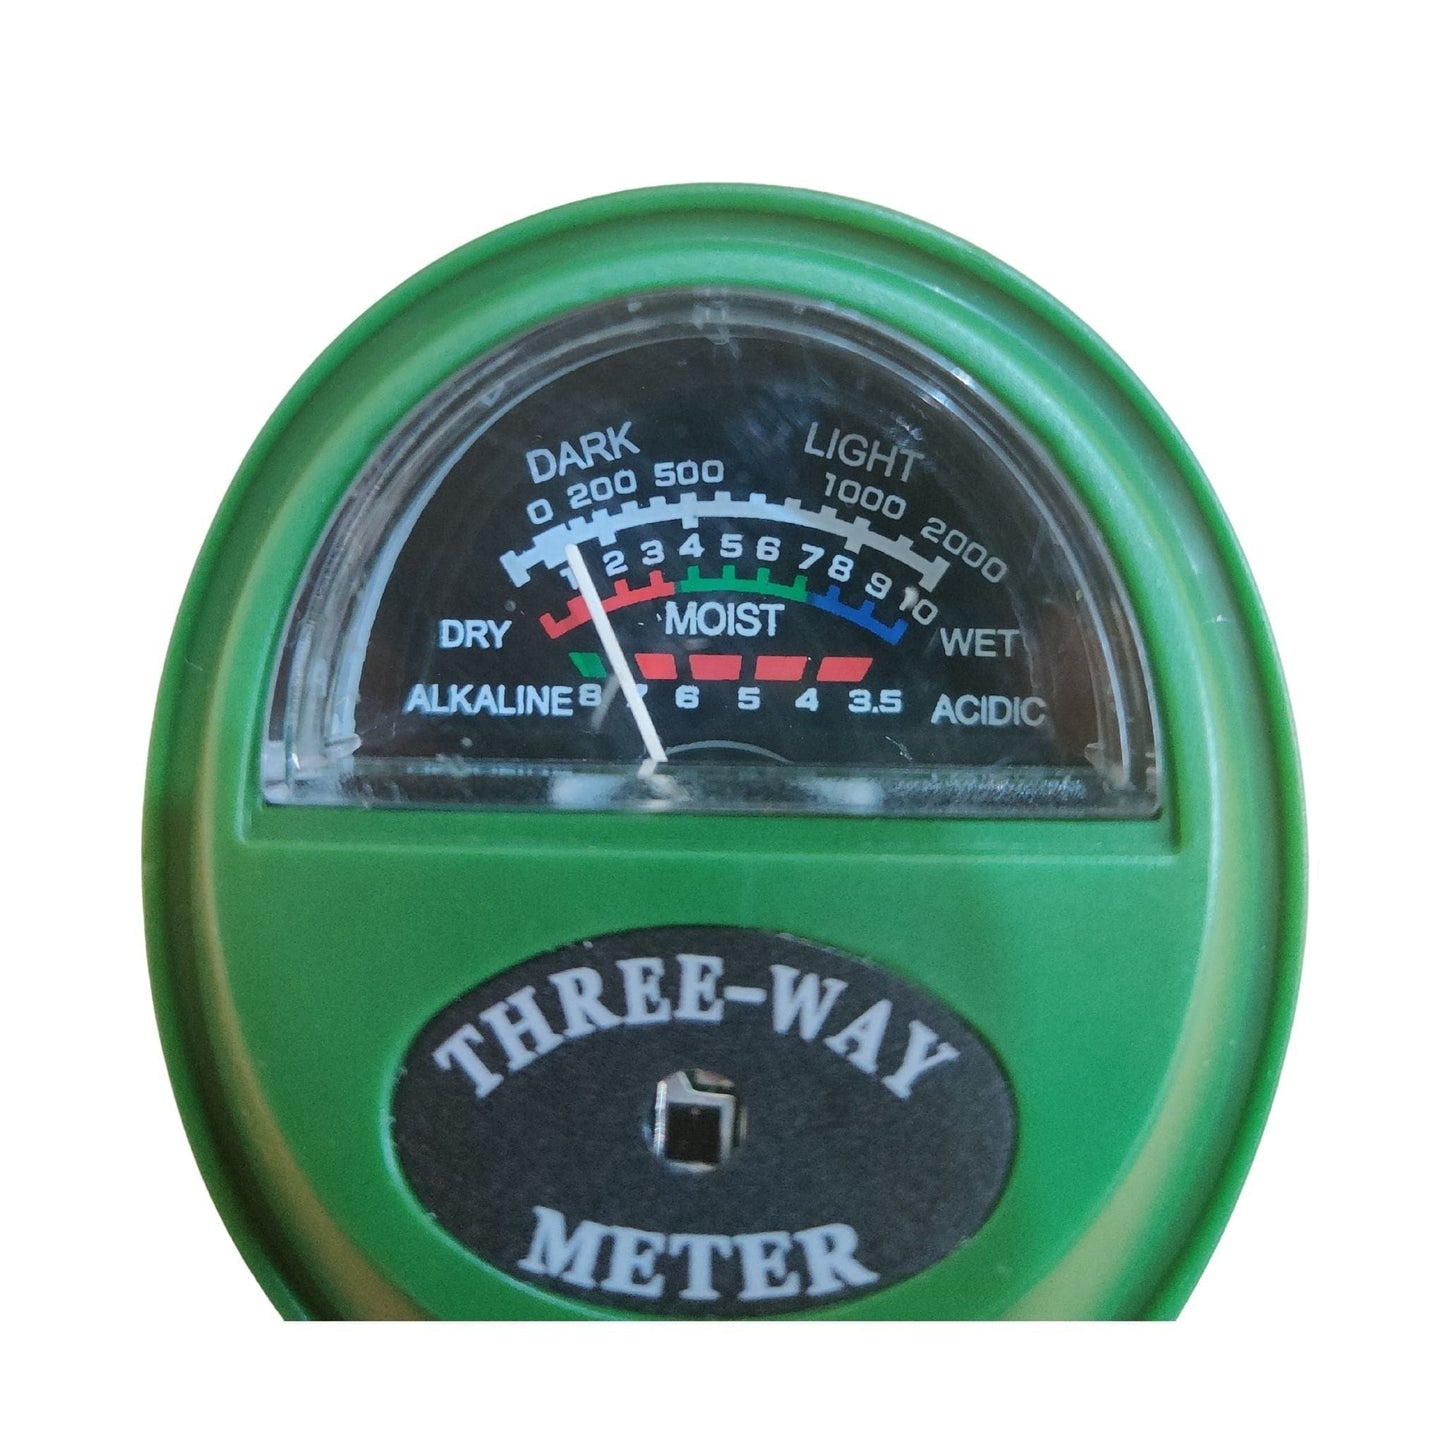 3 In 1 Soil Meter - Light, pH & Moisture Meter